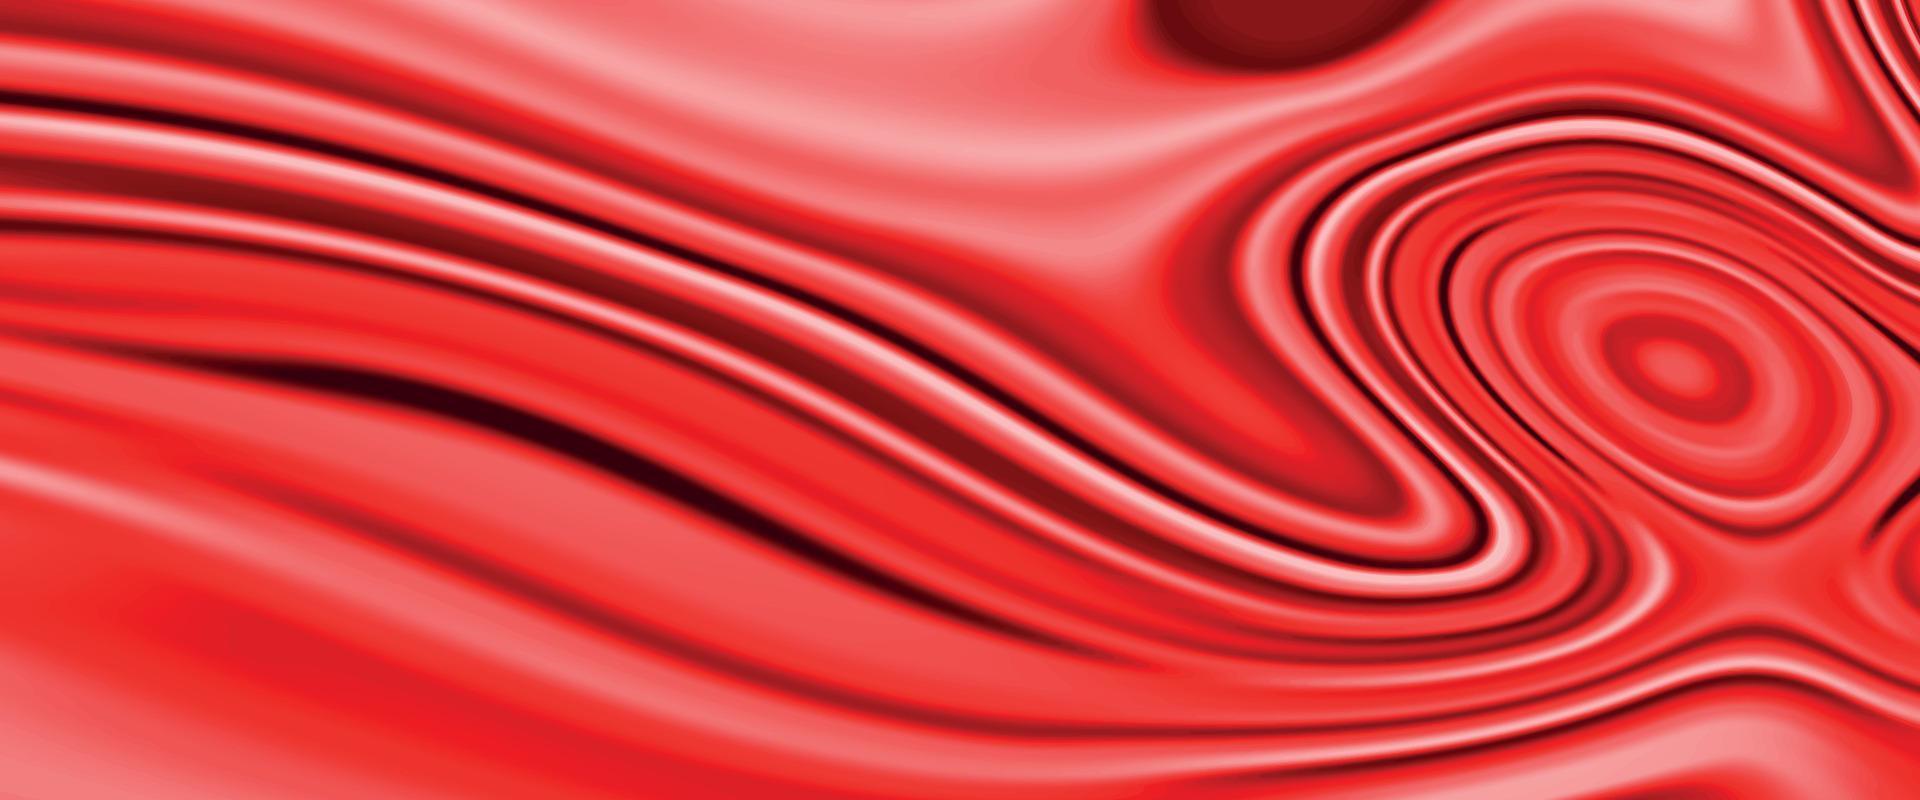 texture de marbre liquide rouge. fond rouge flou numérique avec flux de liquéfaction étalé pour la conception. conception liquéfiée abstraite unique. mélange de peintures acryliques, belles taches de vernis à ongles liquides vecteur